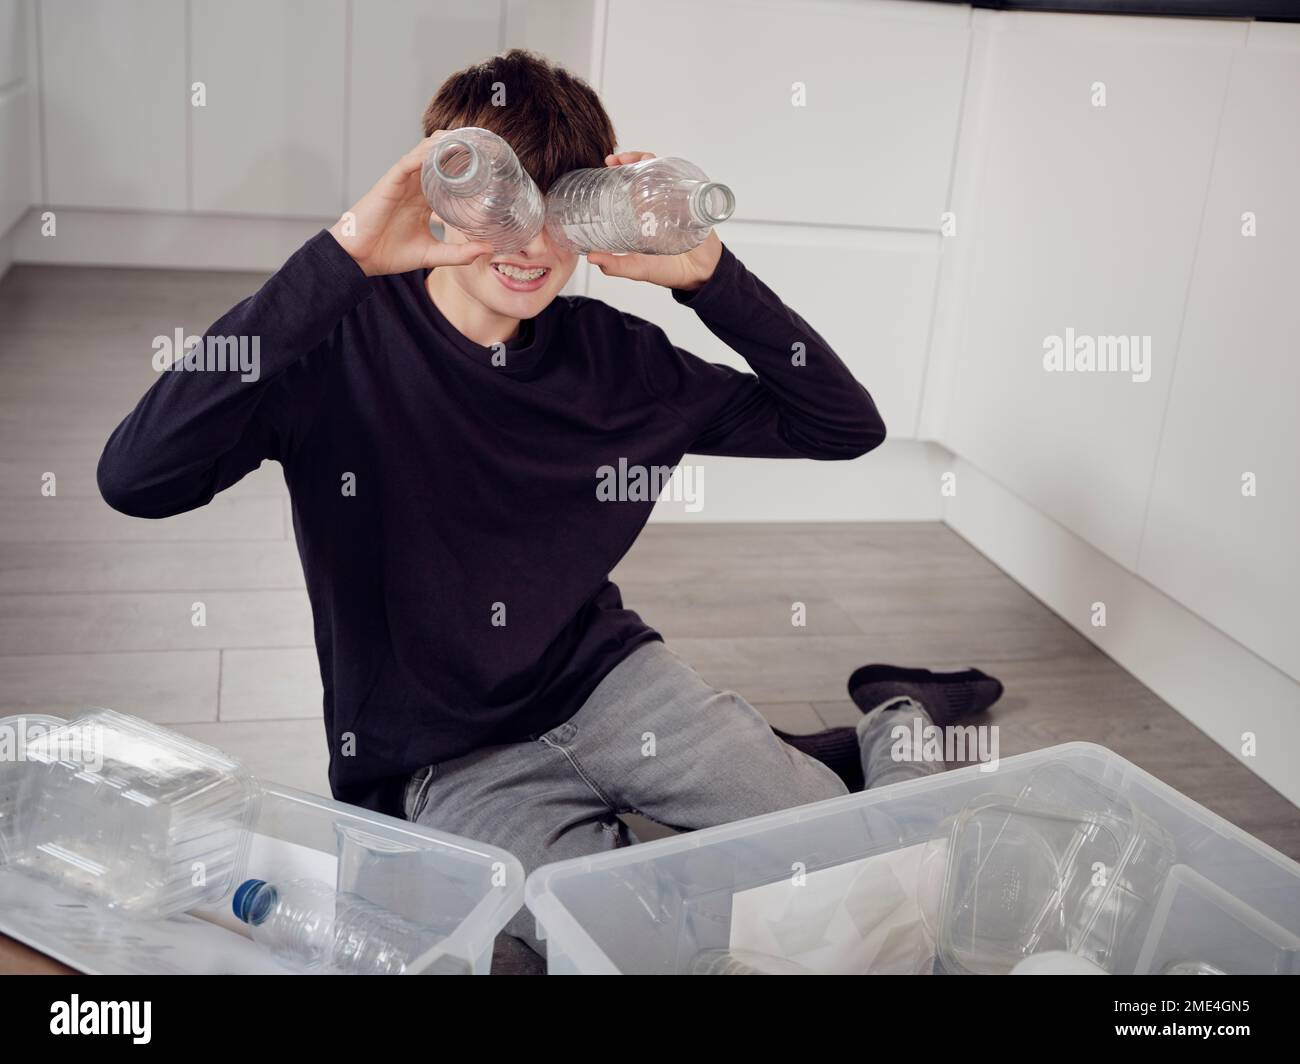 Ein Junge, der Plastikabfälle trennt und die Augen mit Plastikflaschen bedeckt Stockfoto